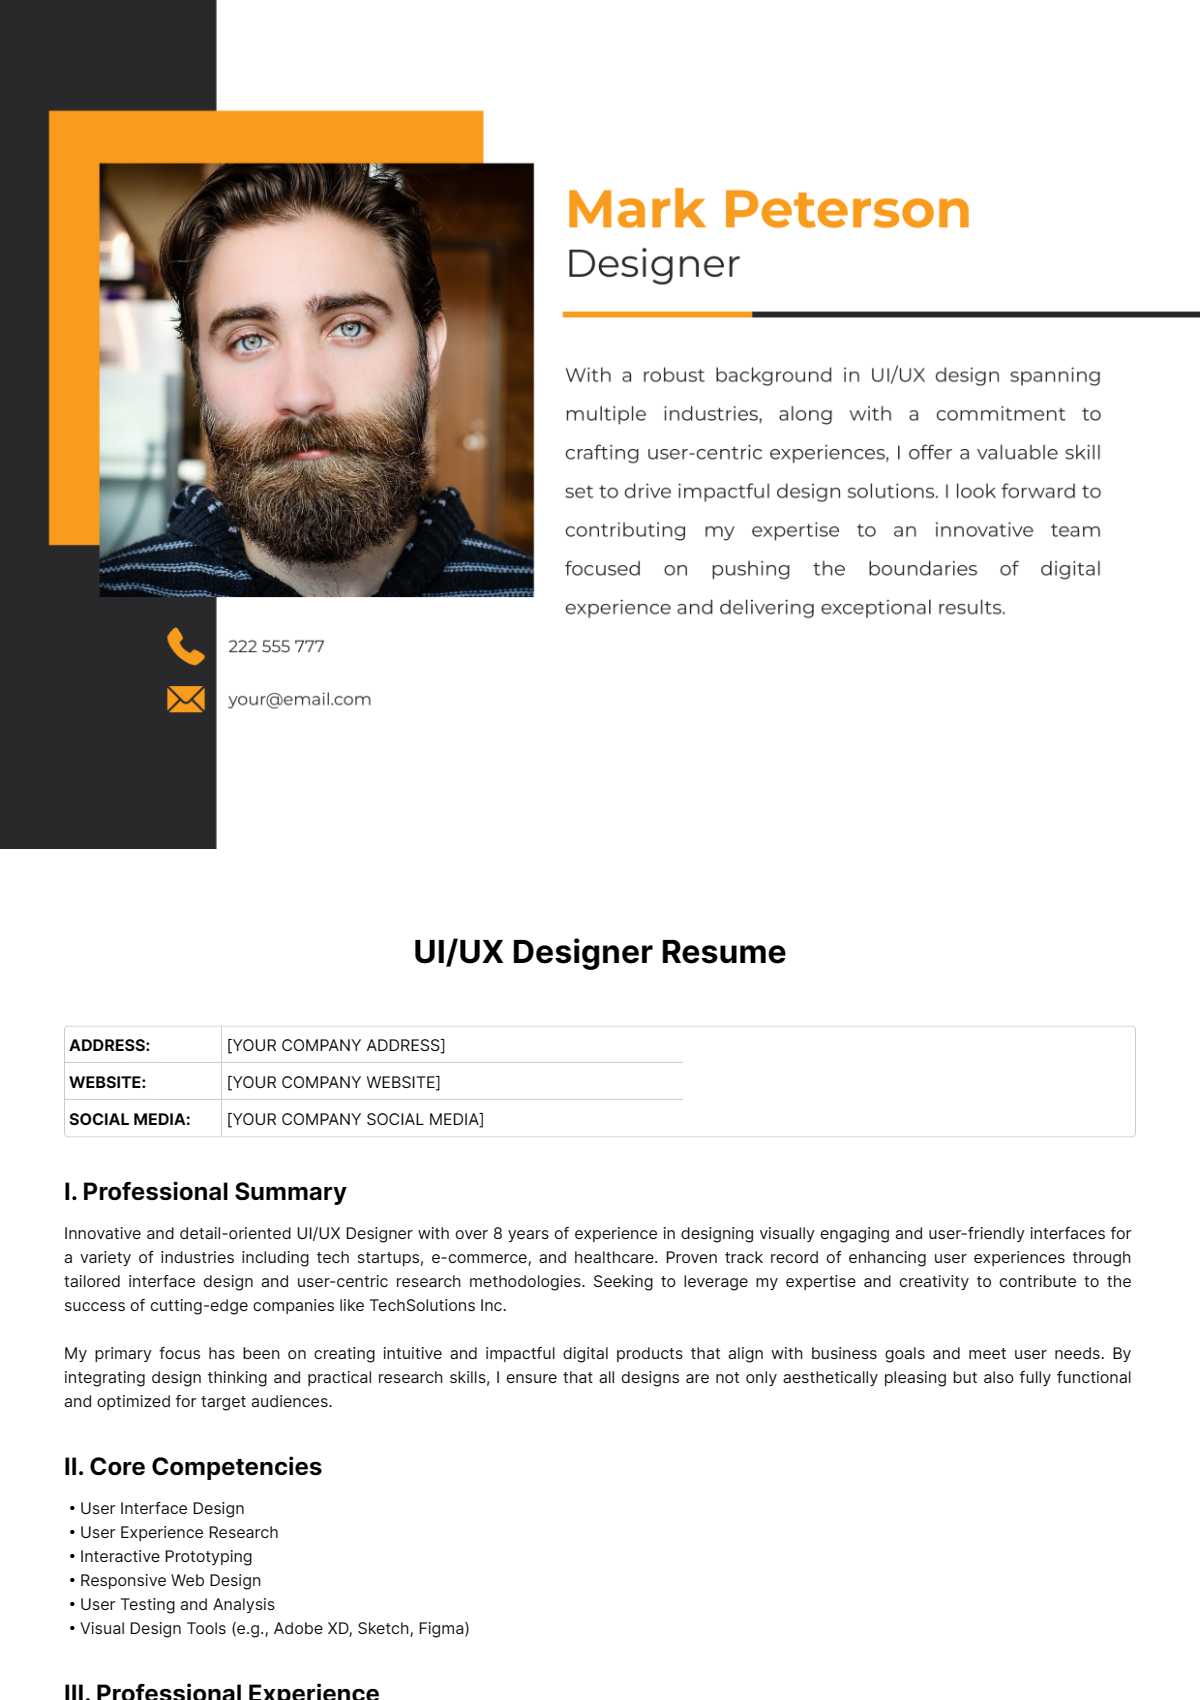 UI/UX Designer Resume Template